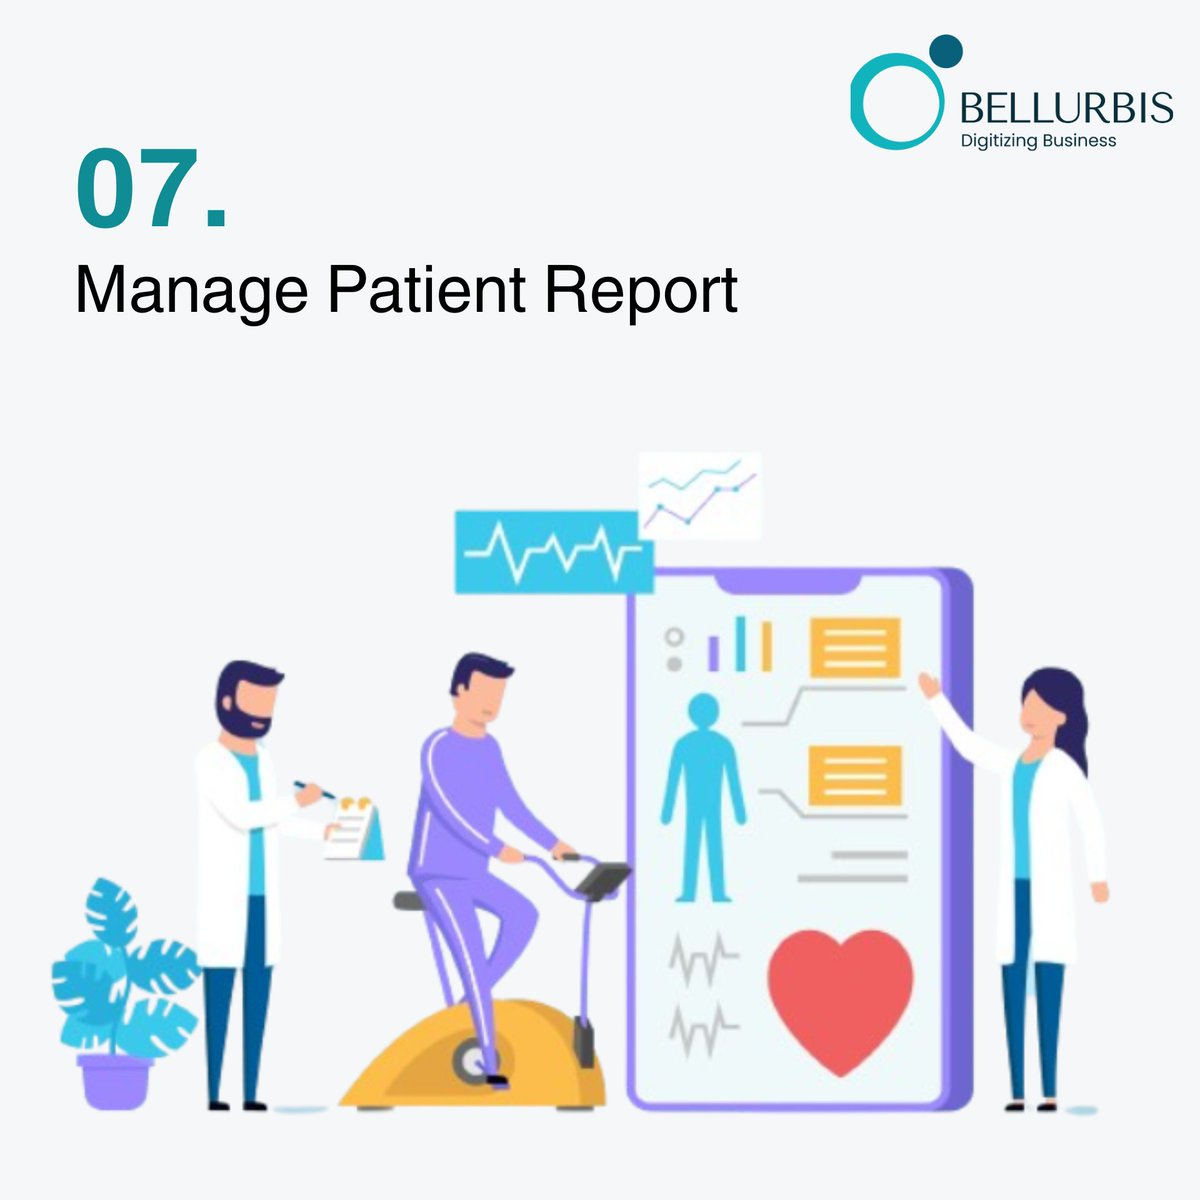 #HealthTech #HospitalManagement #HospitalSoftware #HospitalManagementSystem #DigitalHealthcare #Bellurbis